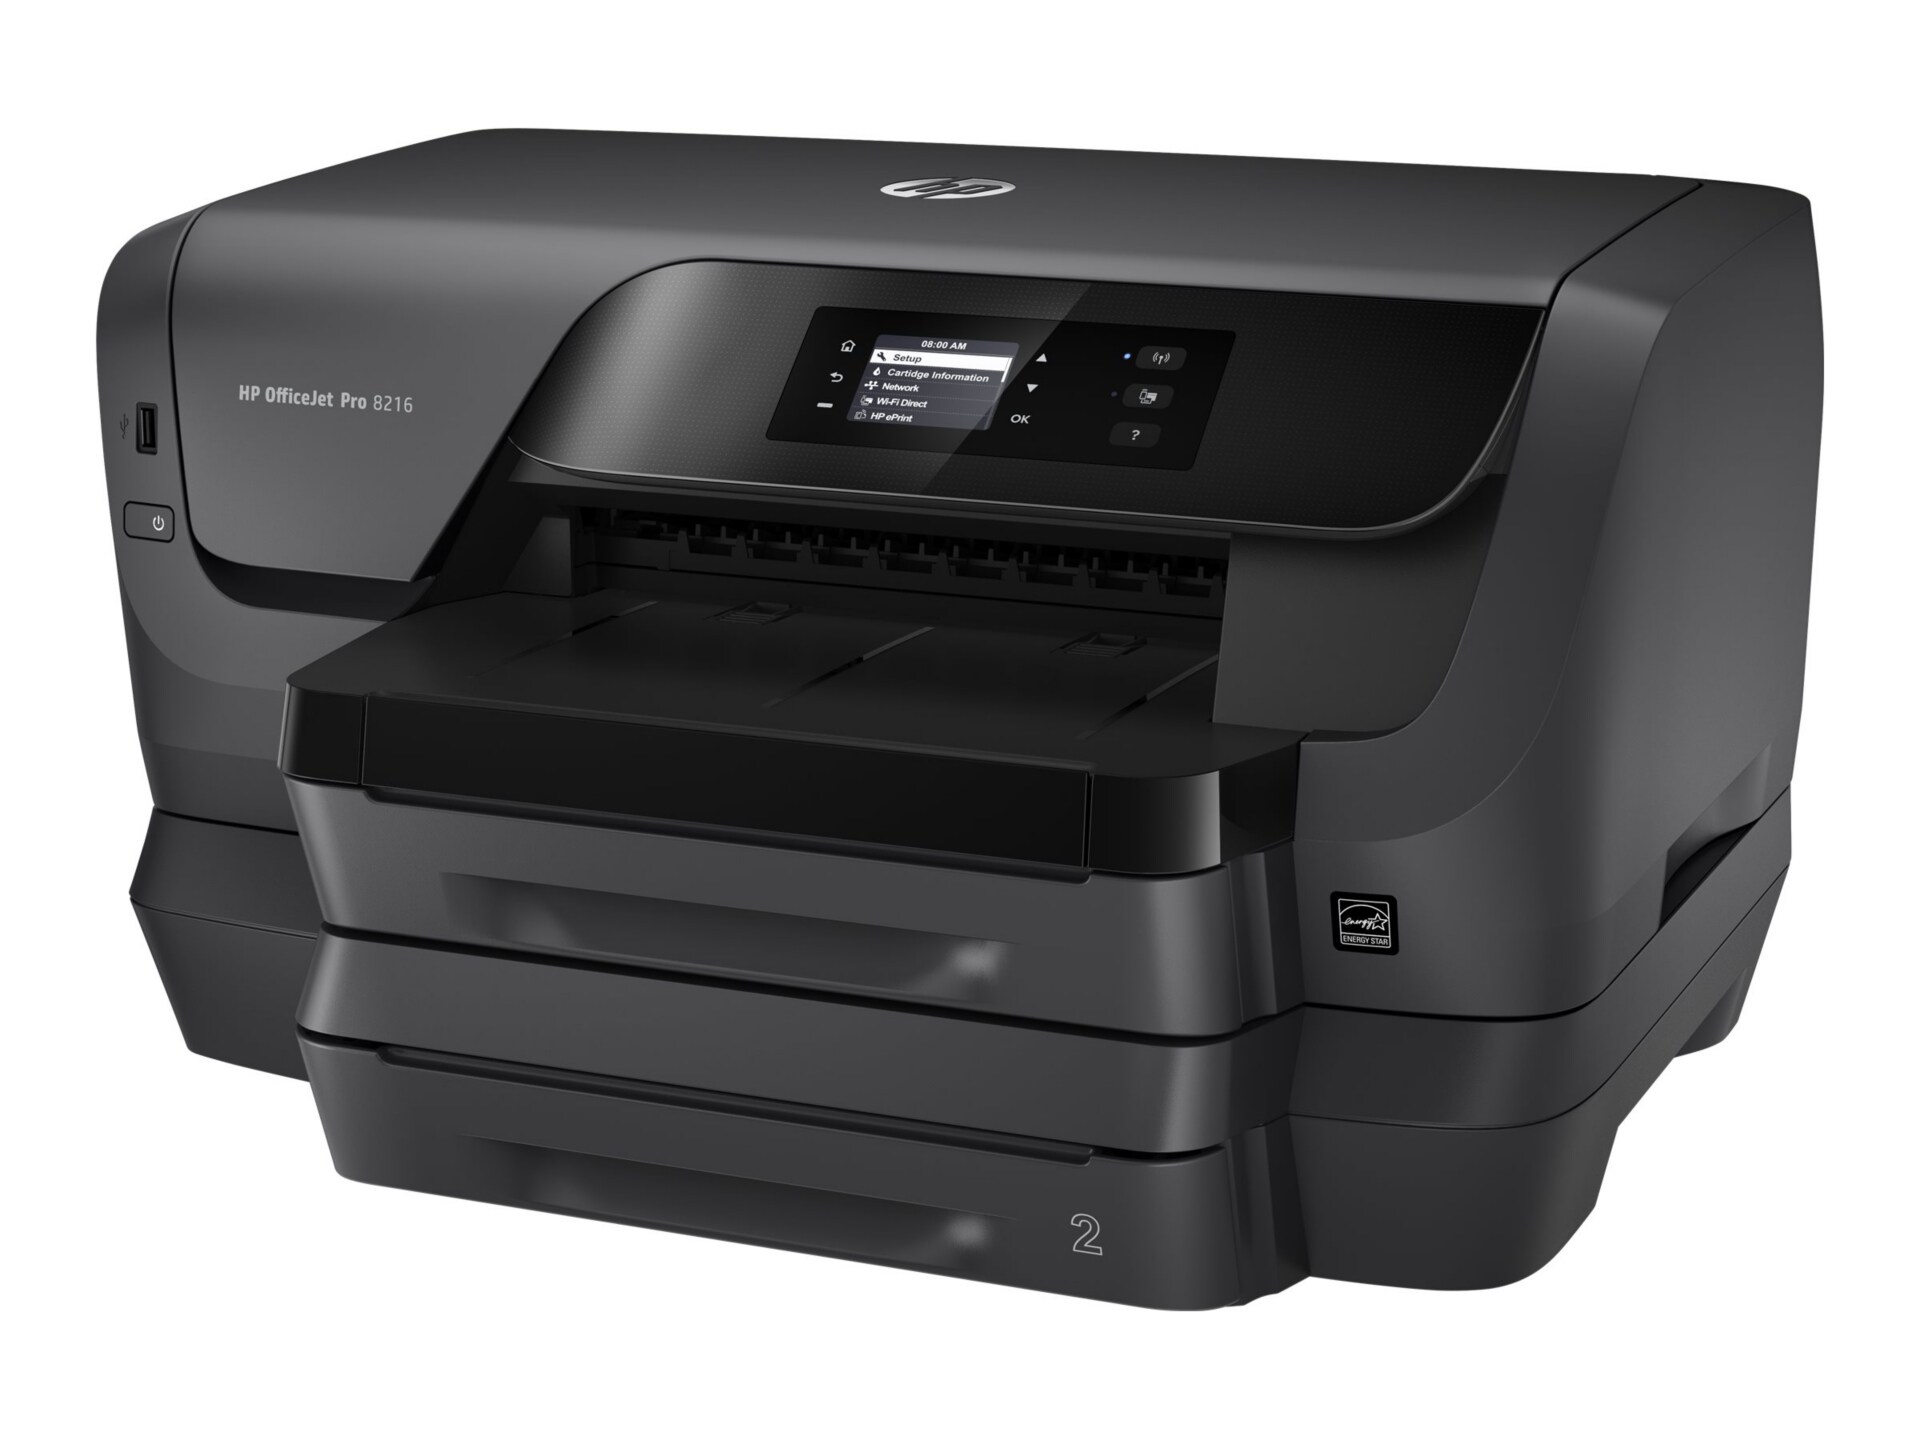 HP Officejet Pro 8216 - printer - color - ink-jet